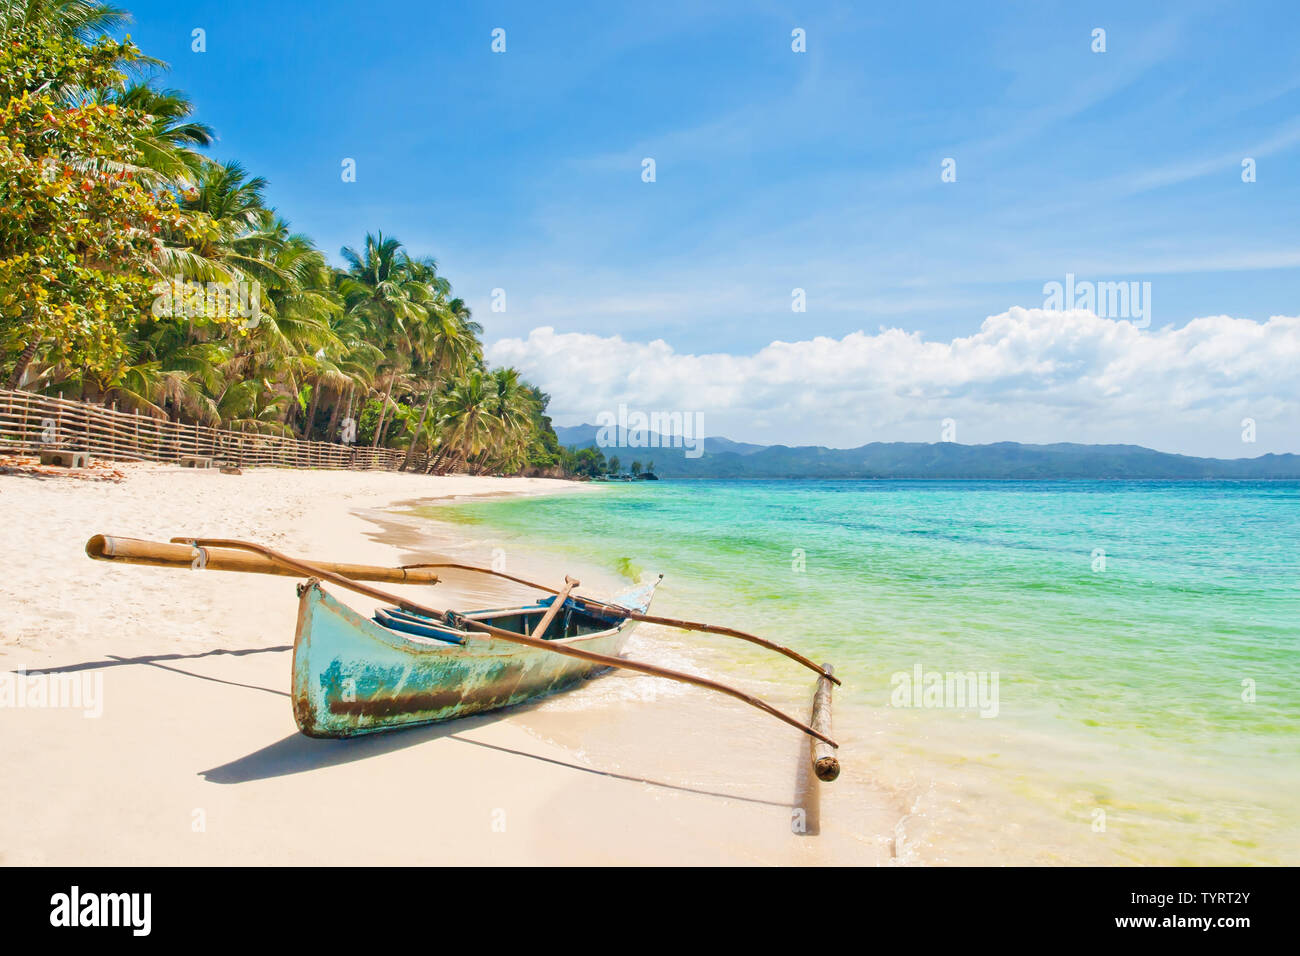 Outrigger traditionnel ancien bateau de pêche sur la plage de sable blanc avec des palmiers aux beaux jours de l'été, l'île de Boracay, Philippines Banque D'Images